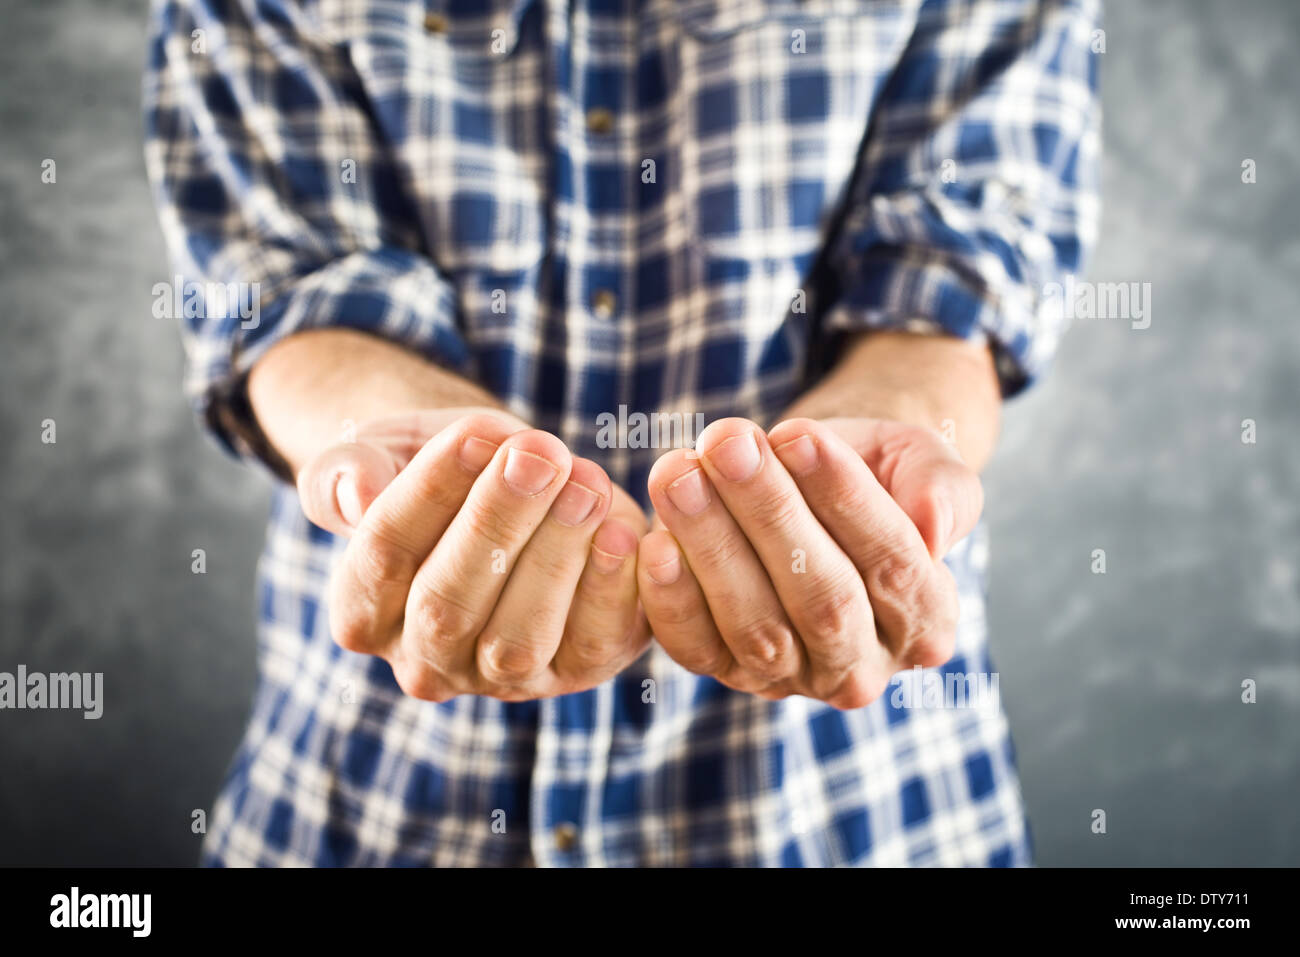 Maschio di aprire le mani per elemosinare speriamo che terrà fino. Mani a tazza per chiedere aiuto o di carità. Foto Stock